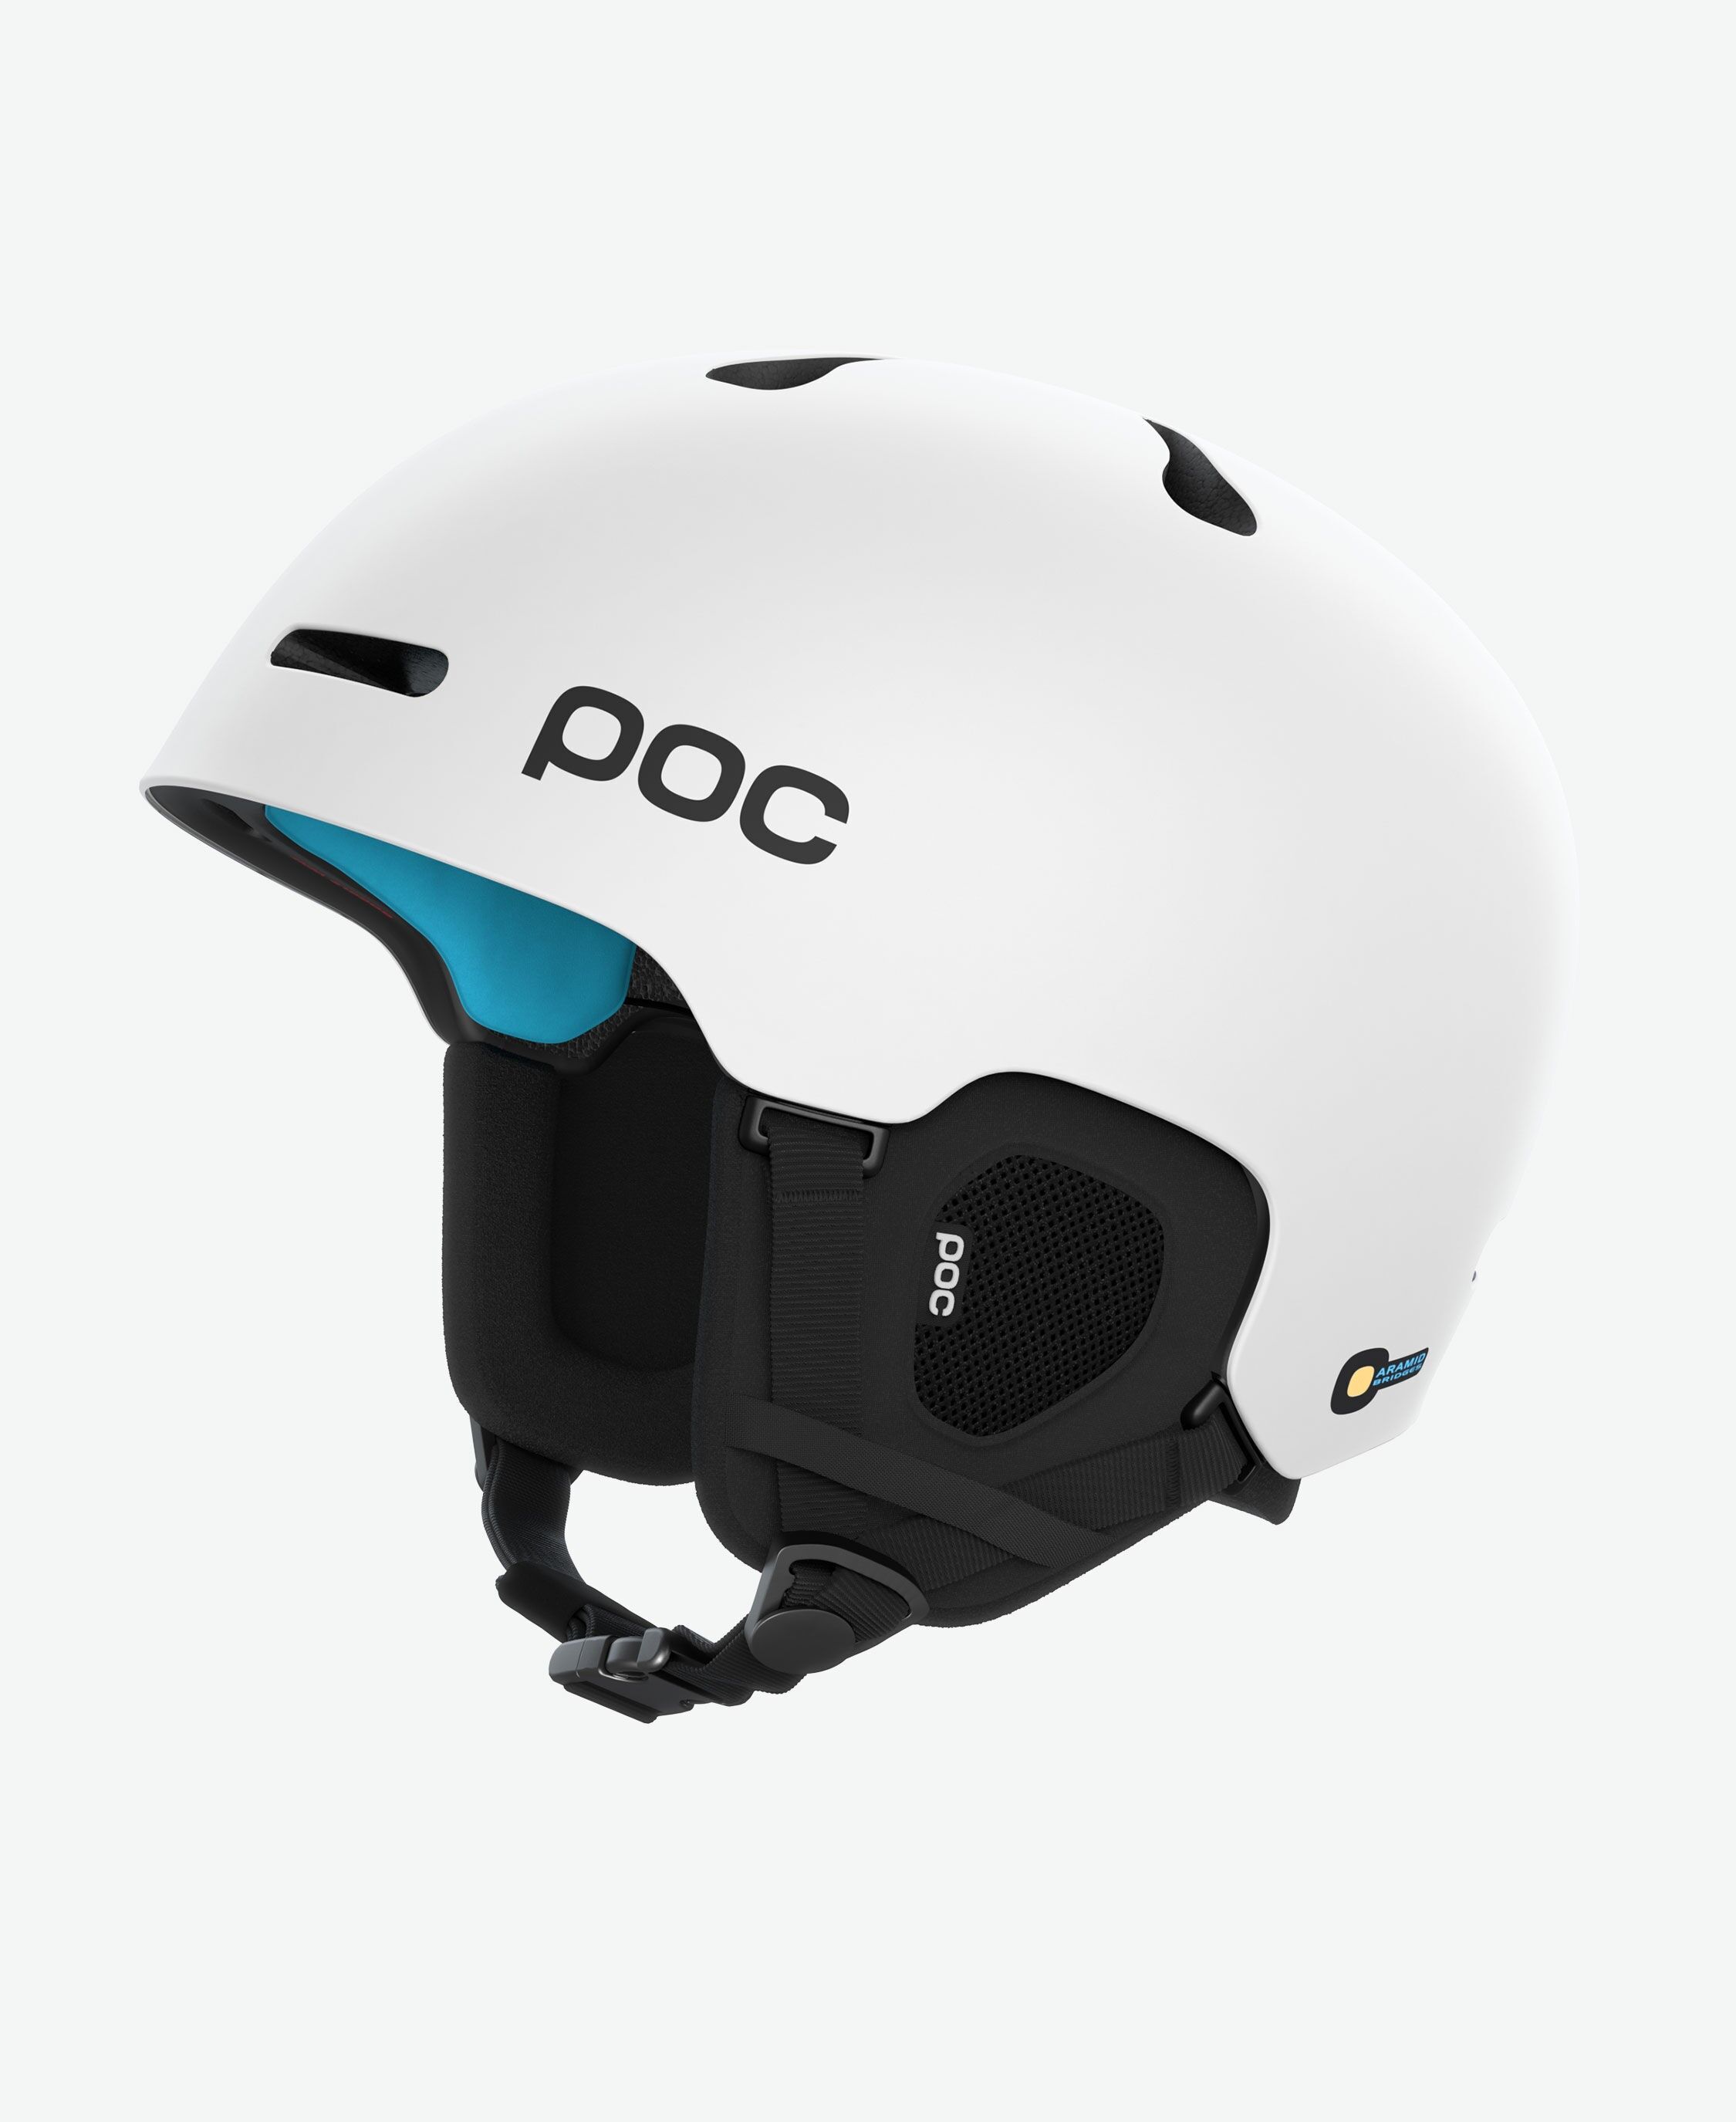 Poc Fornix SPIN - Ski helmet